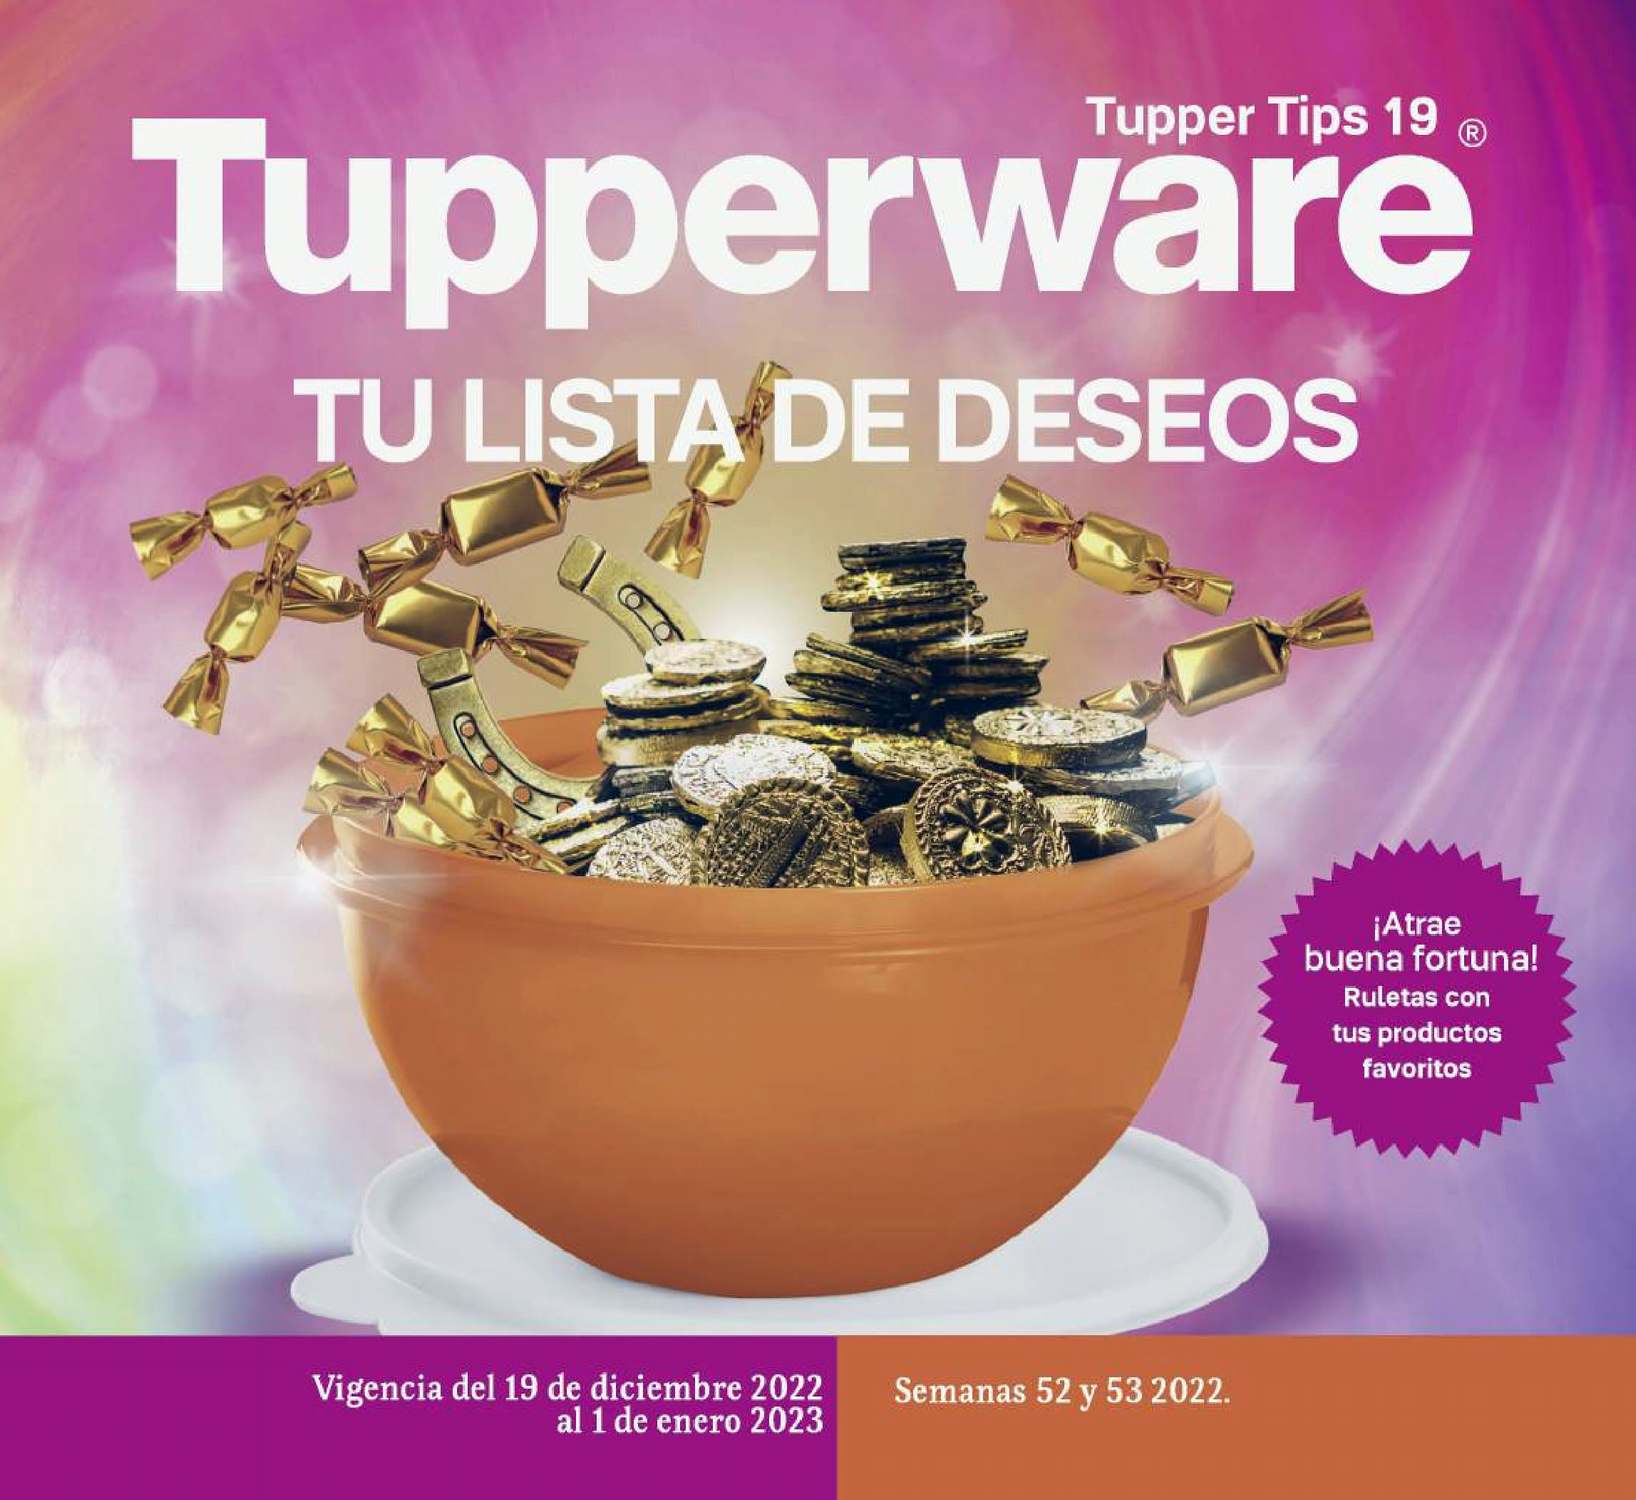 Catálogo Tupperware Tips 19 2022 México